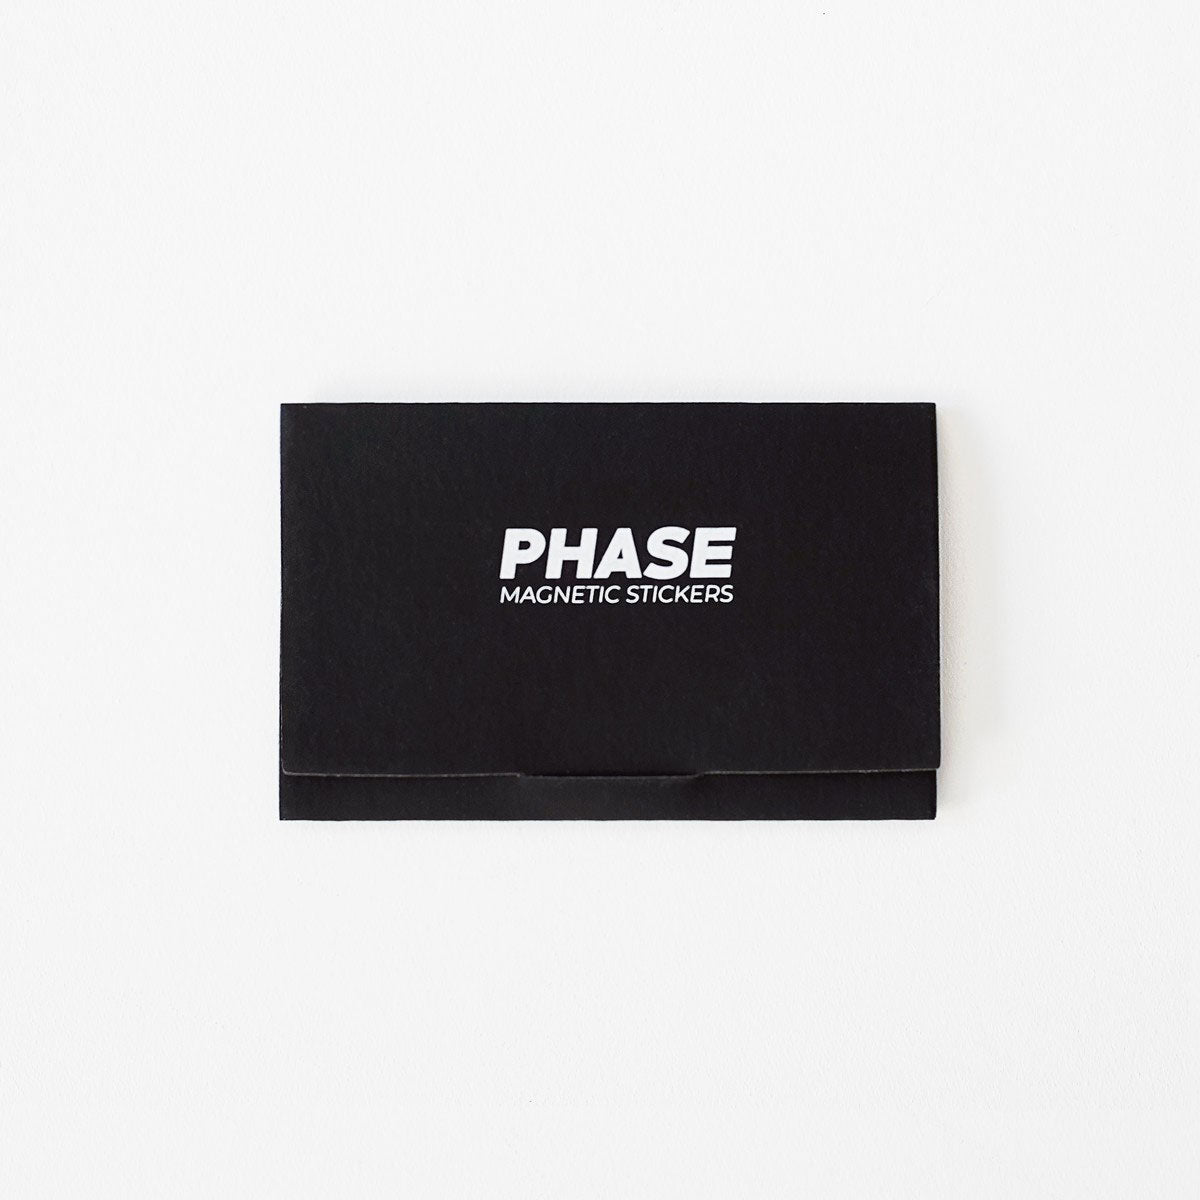 Phase Magnetic stickers (Sobre con 4 unidades) el valor es por sobre.